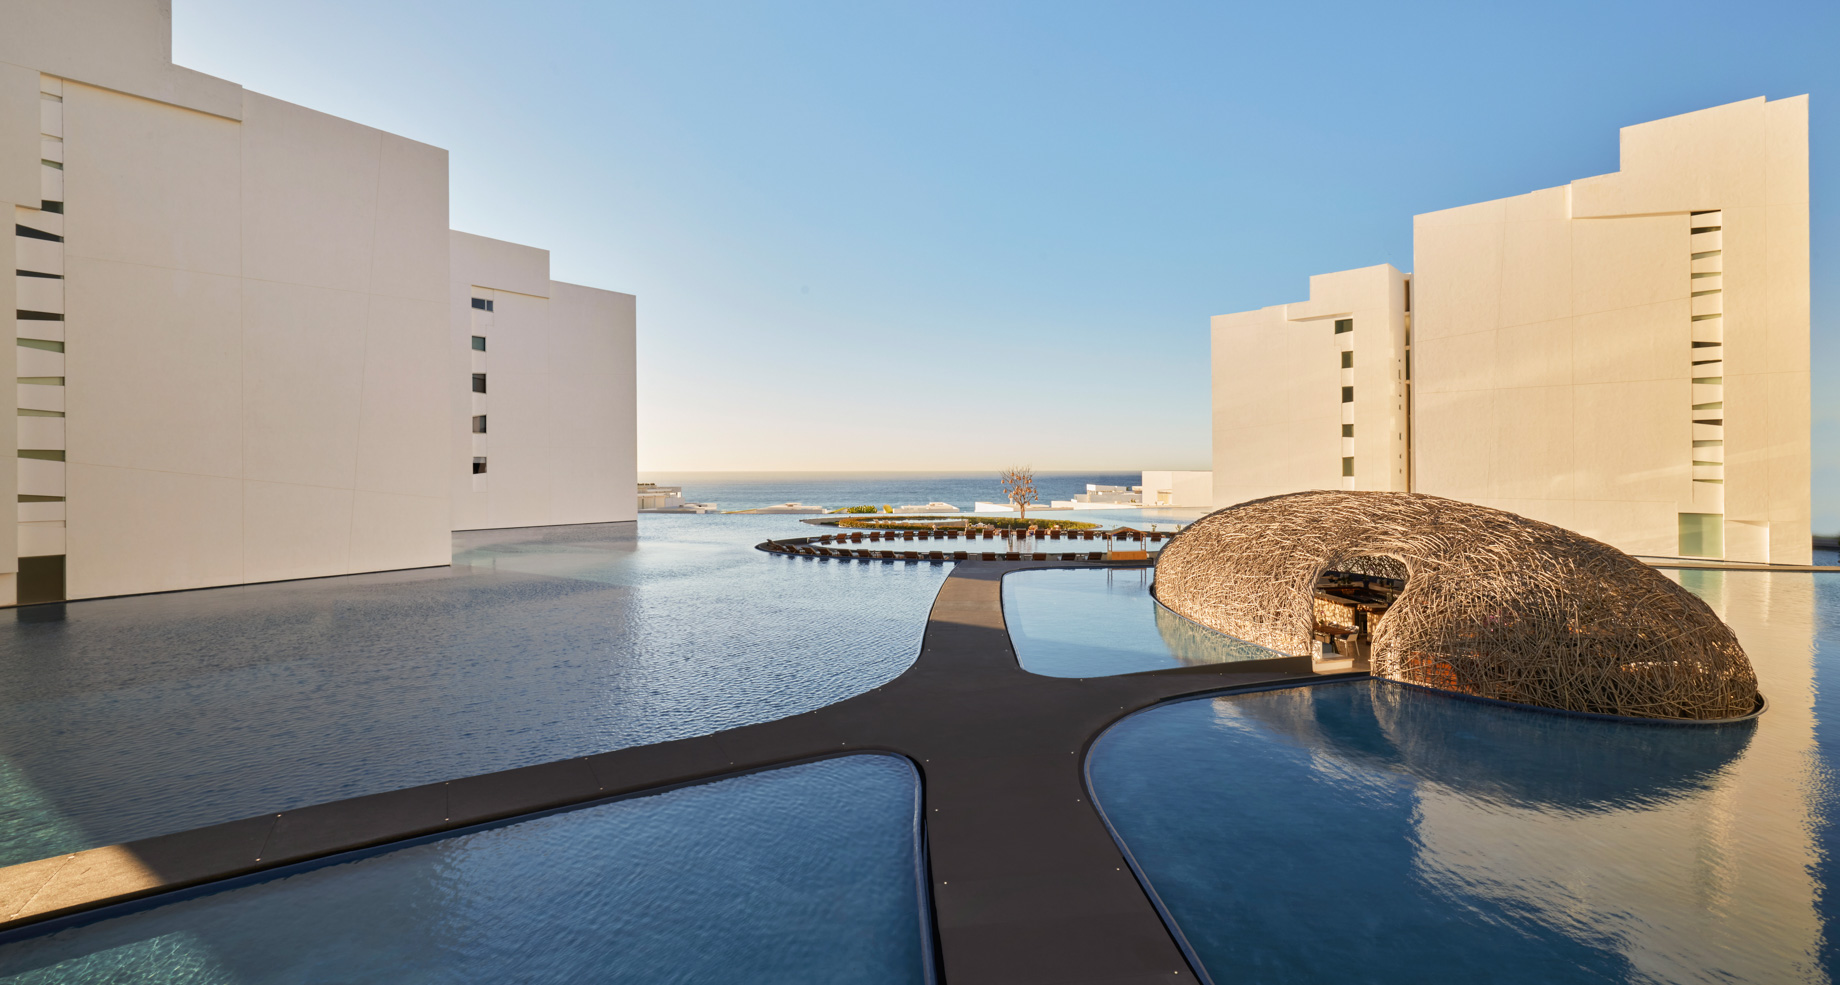 Viceroy Los Cabos Resort – San José del Cabo, Mexico – Courtyard Reflecting Pool